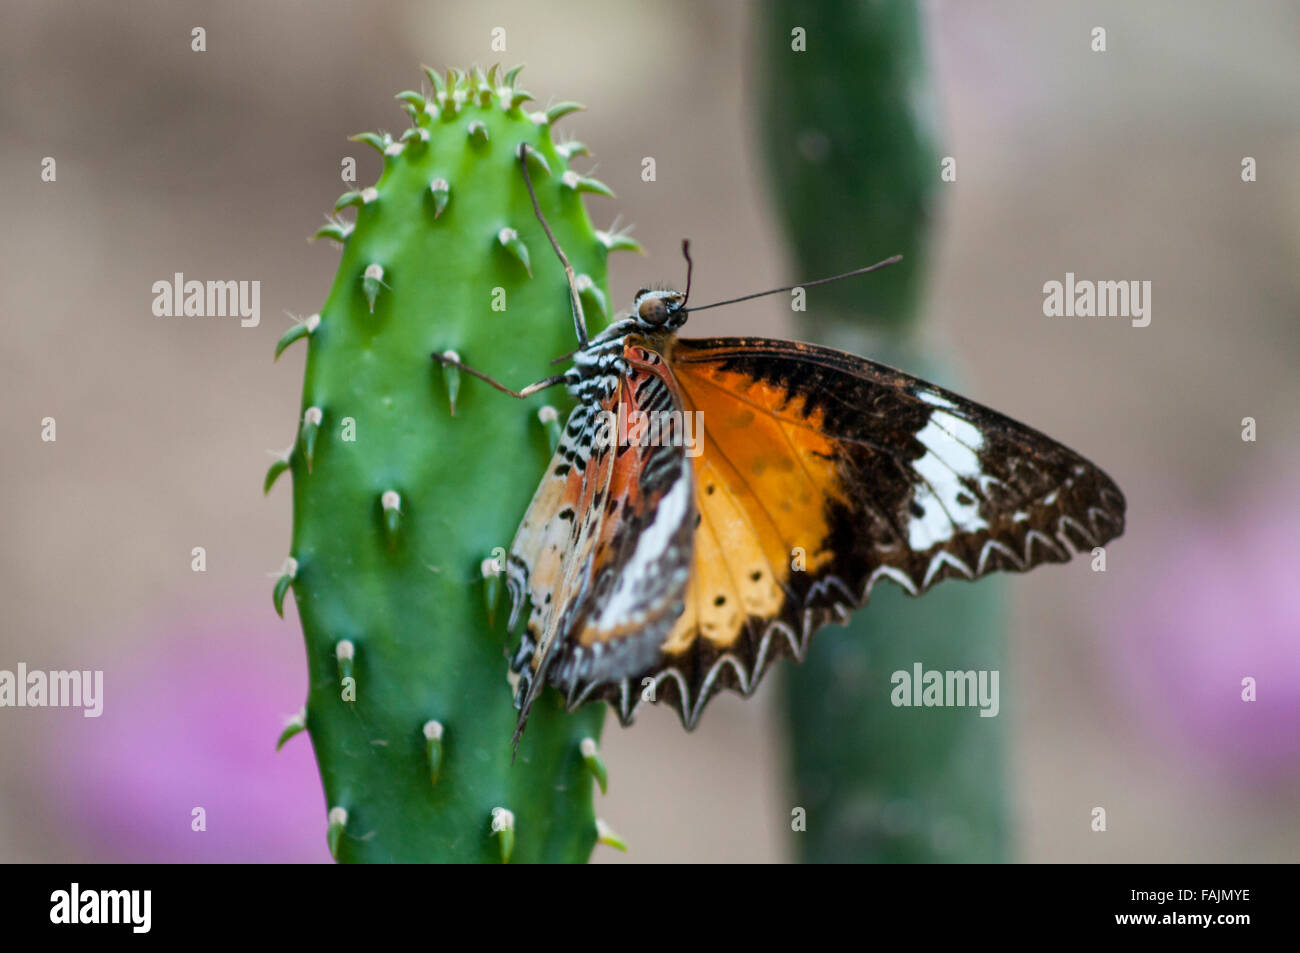 Llanura de mariposa tigre (Danaus chrysippus), también conocida como la mariposa monarca africana, en un cactus en Myanmar. Foto de stock